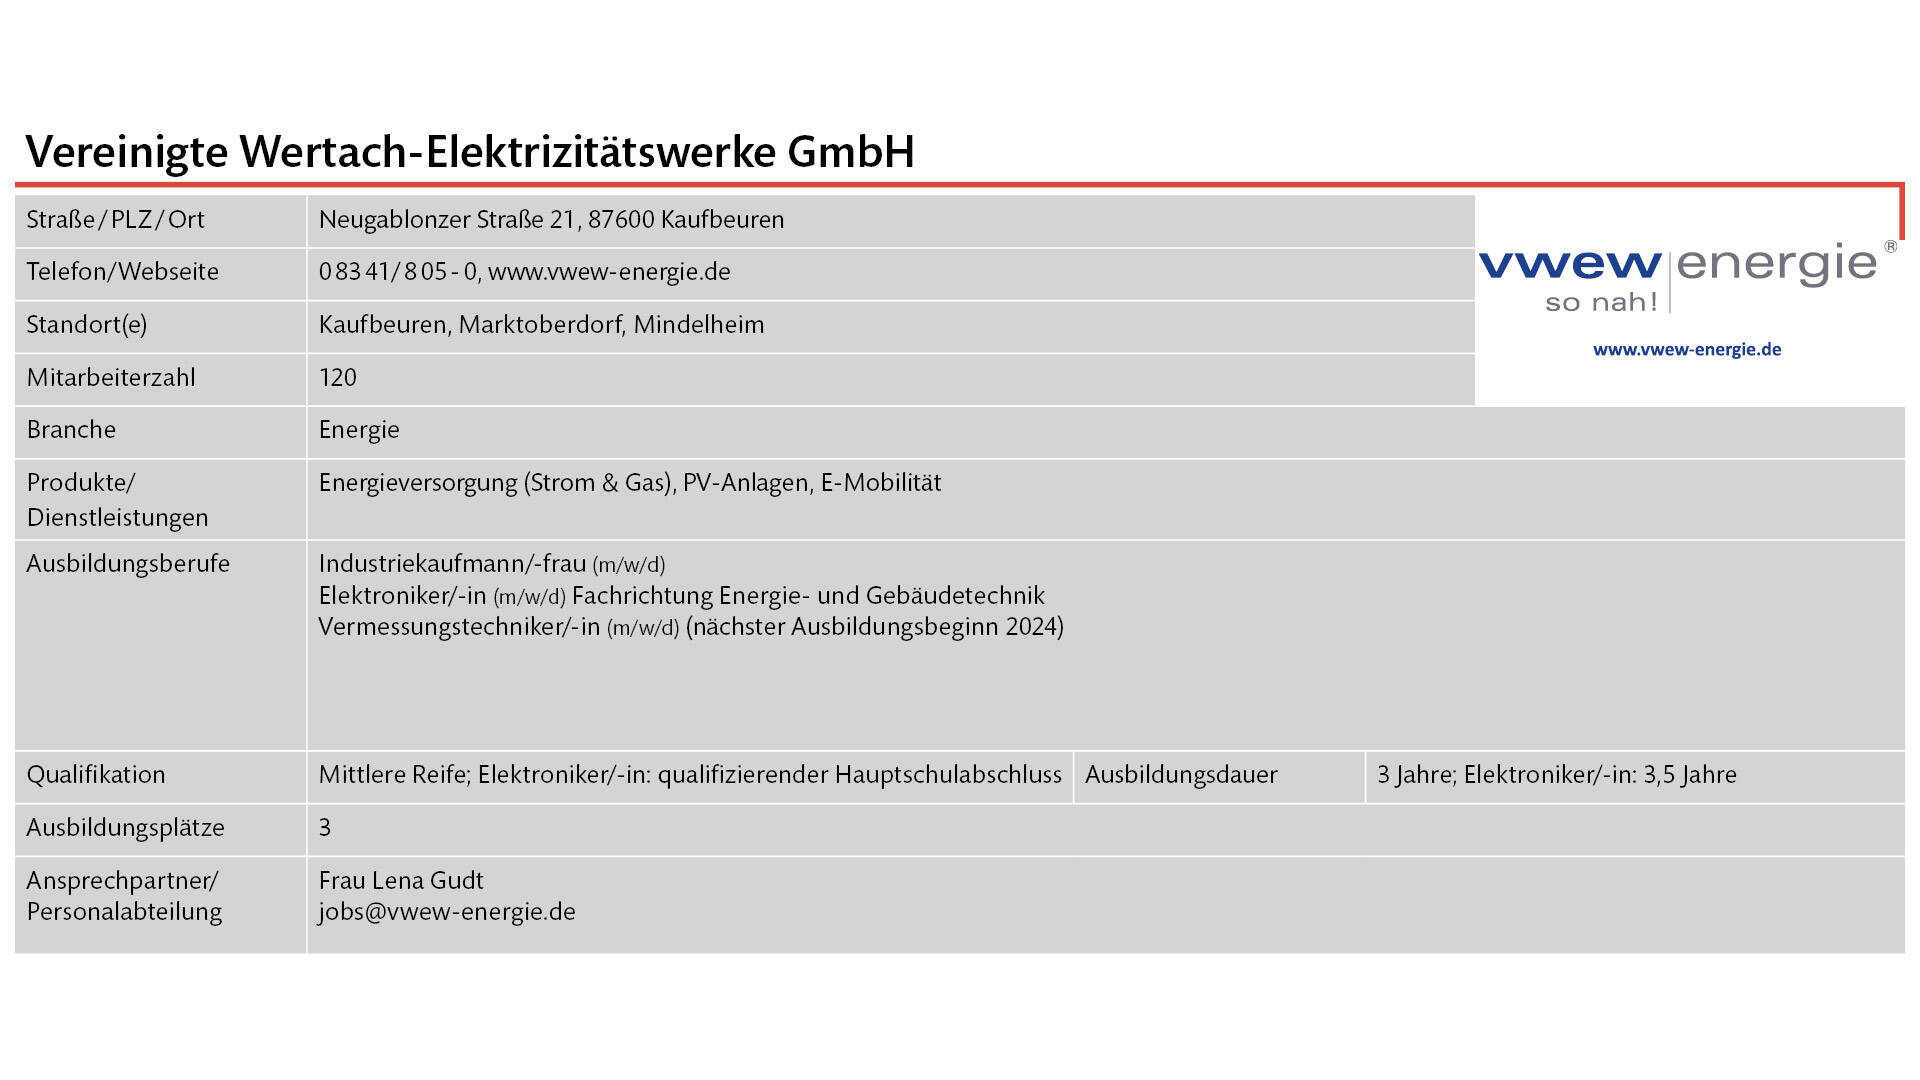 Steckbrief  Vereinigte Wertach-Elektrizitätswerke GmbH